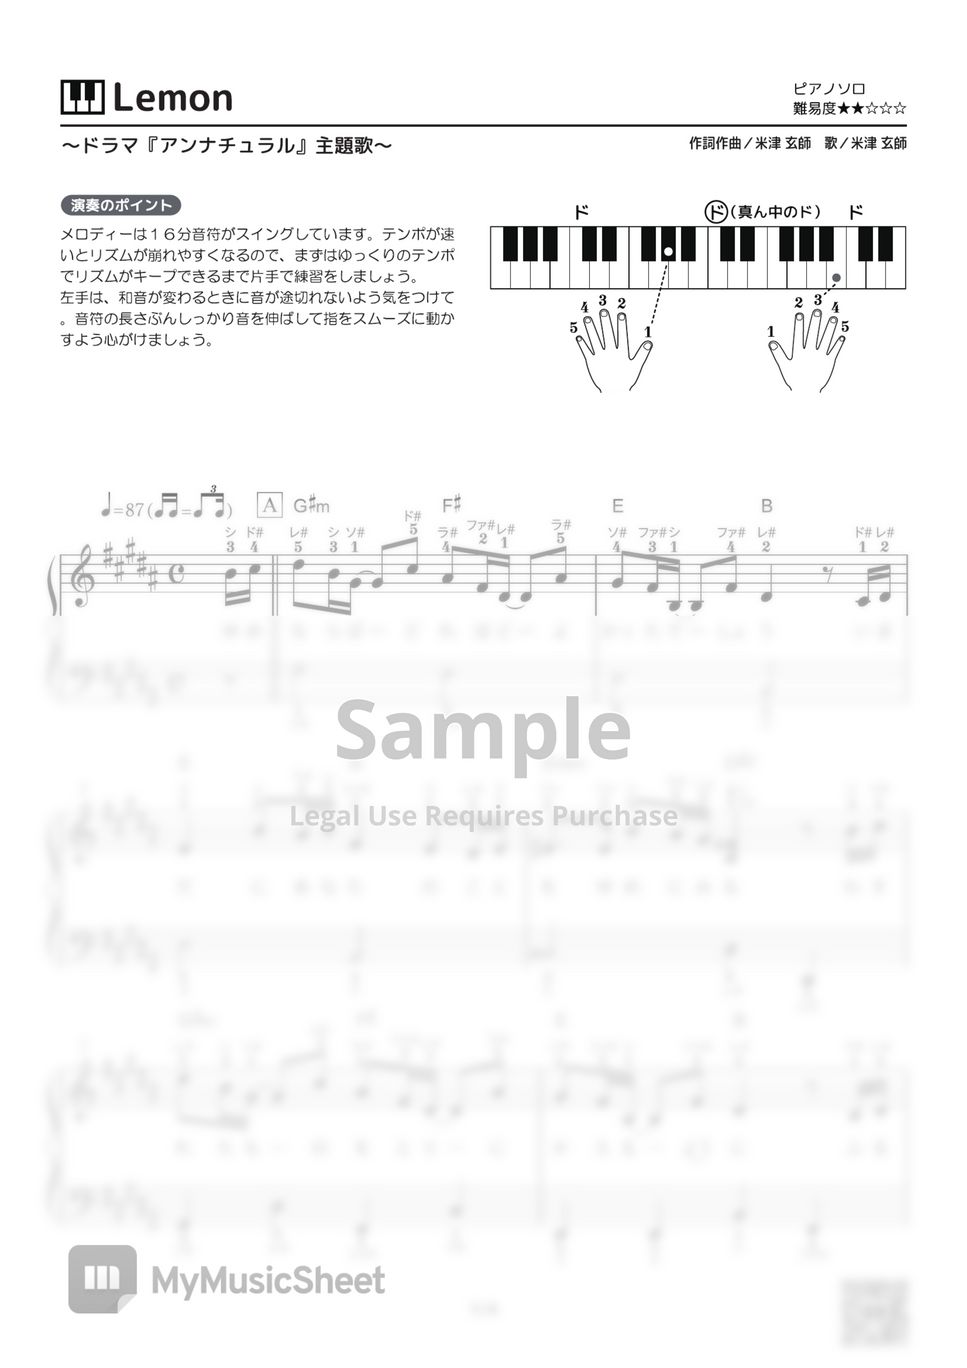 Kenshi Yonezu - Lemon by PianoBooks